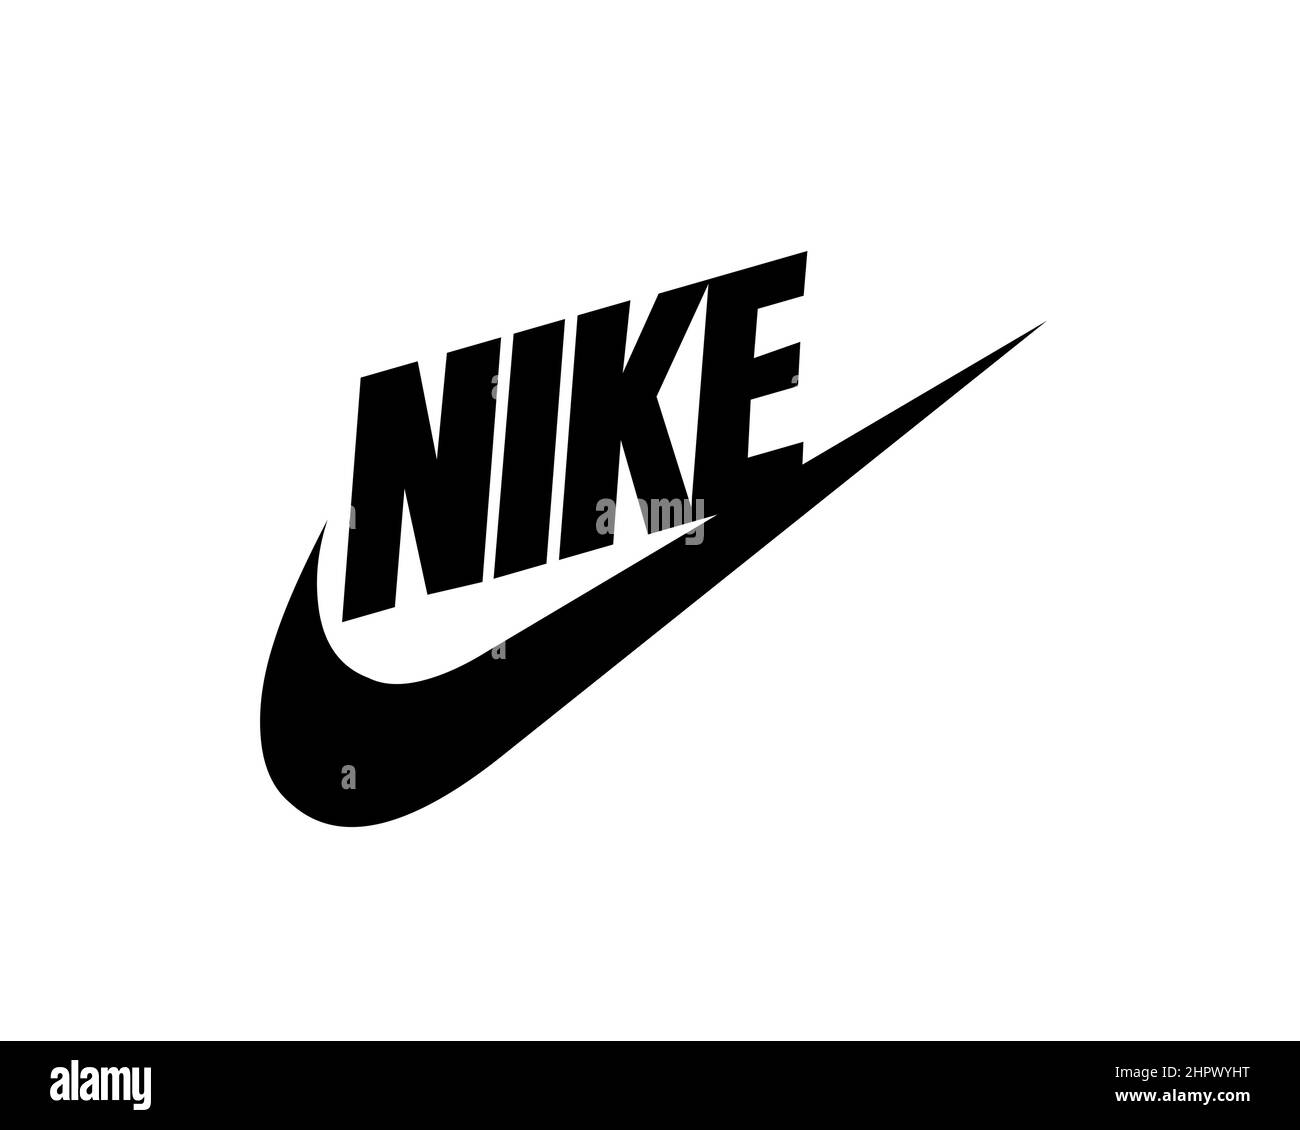 Logo Nike trụ trên nền trắng như thế nào sẽ khiến bạn phải trầm trồ! Hãy tải xuống những hình ảnh này để ngắm nhìn, chúng sẽ không làm bạn thất vọng!